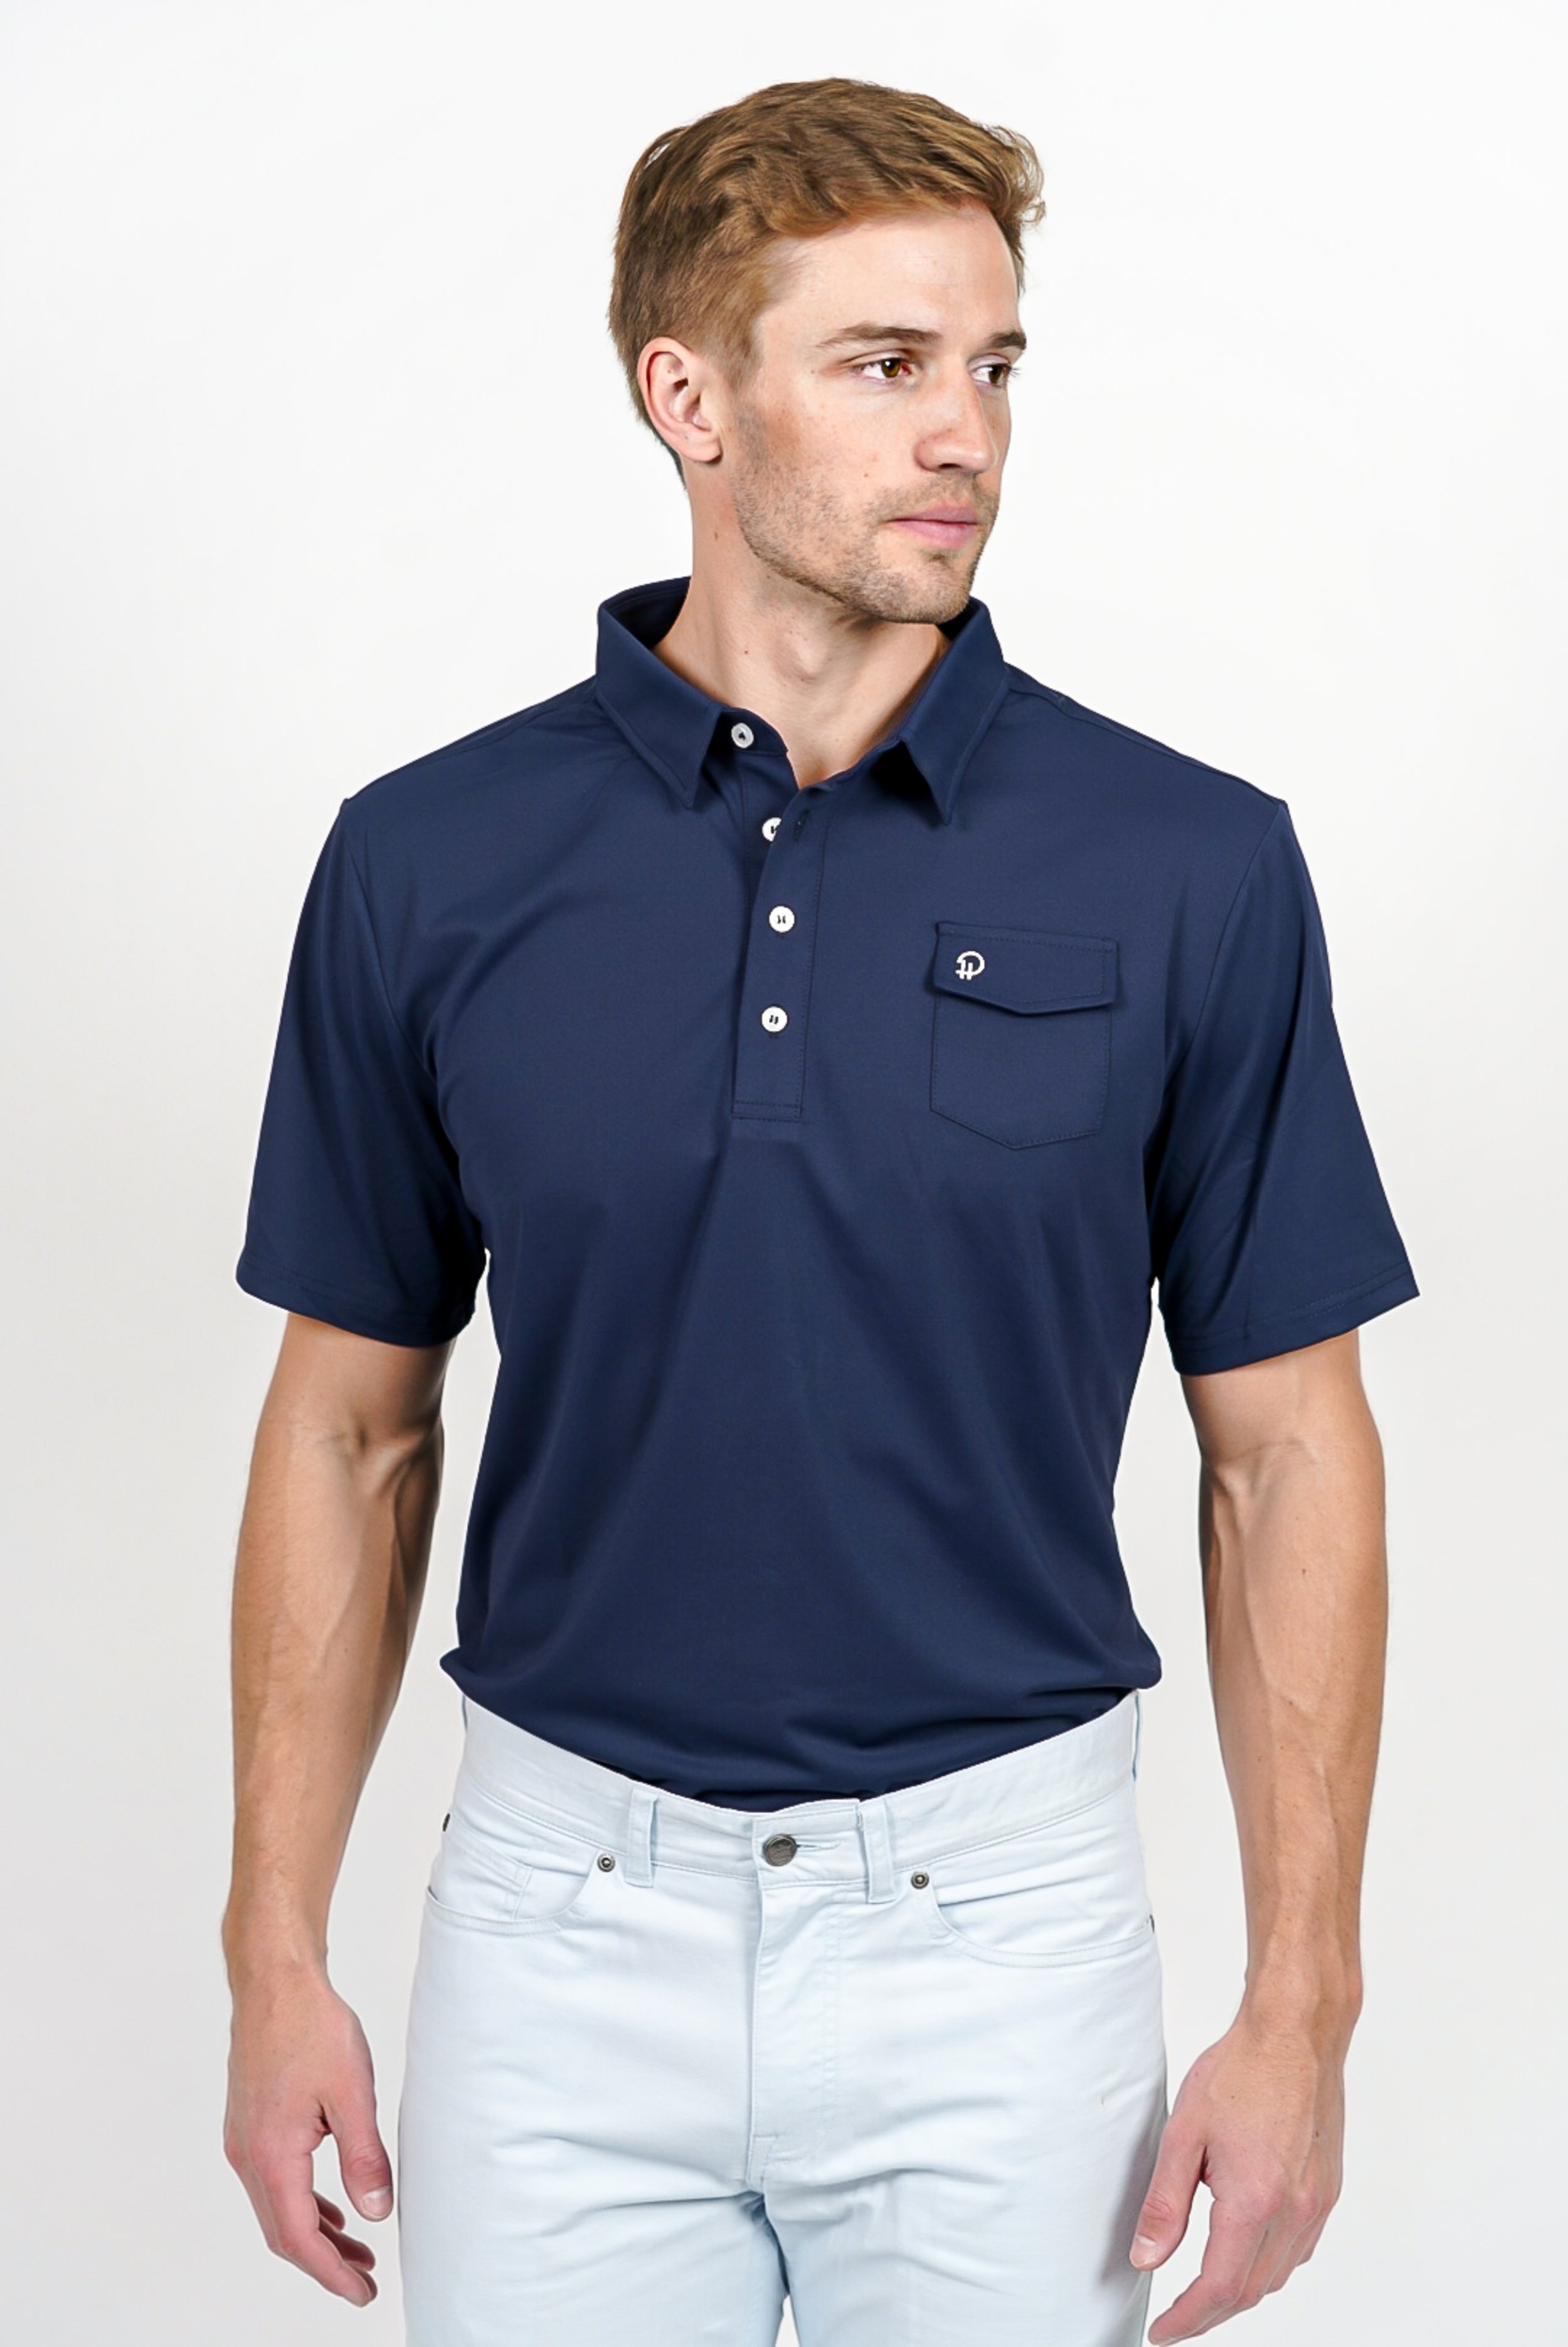 Navy Blue Golf Shirt — Parker & Hyde